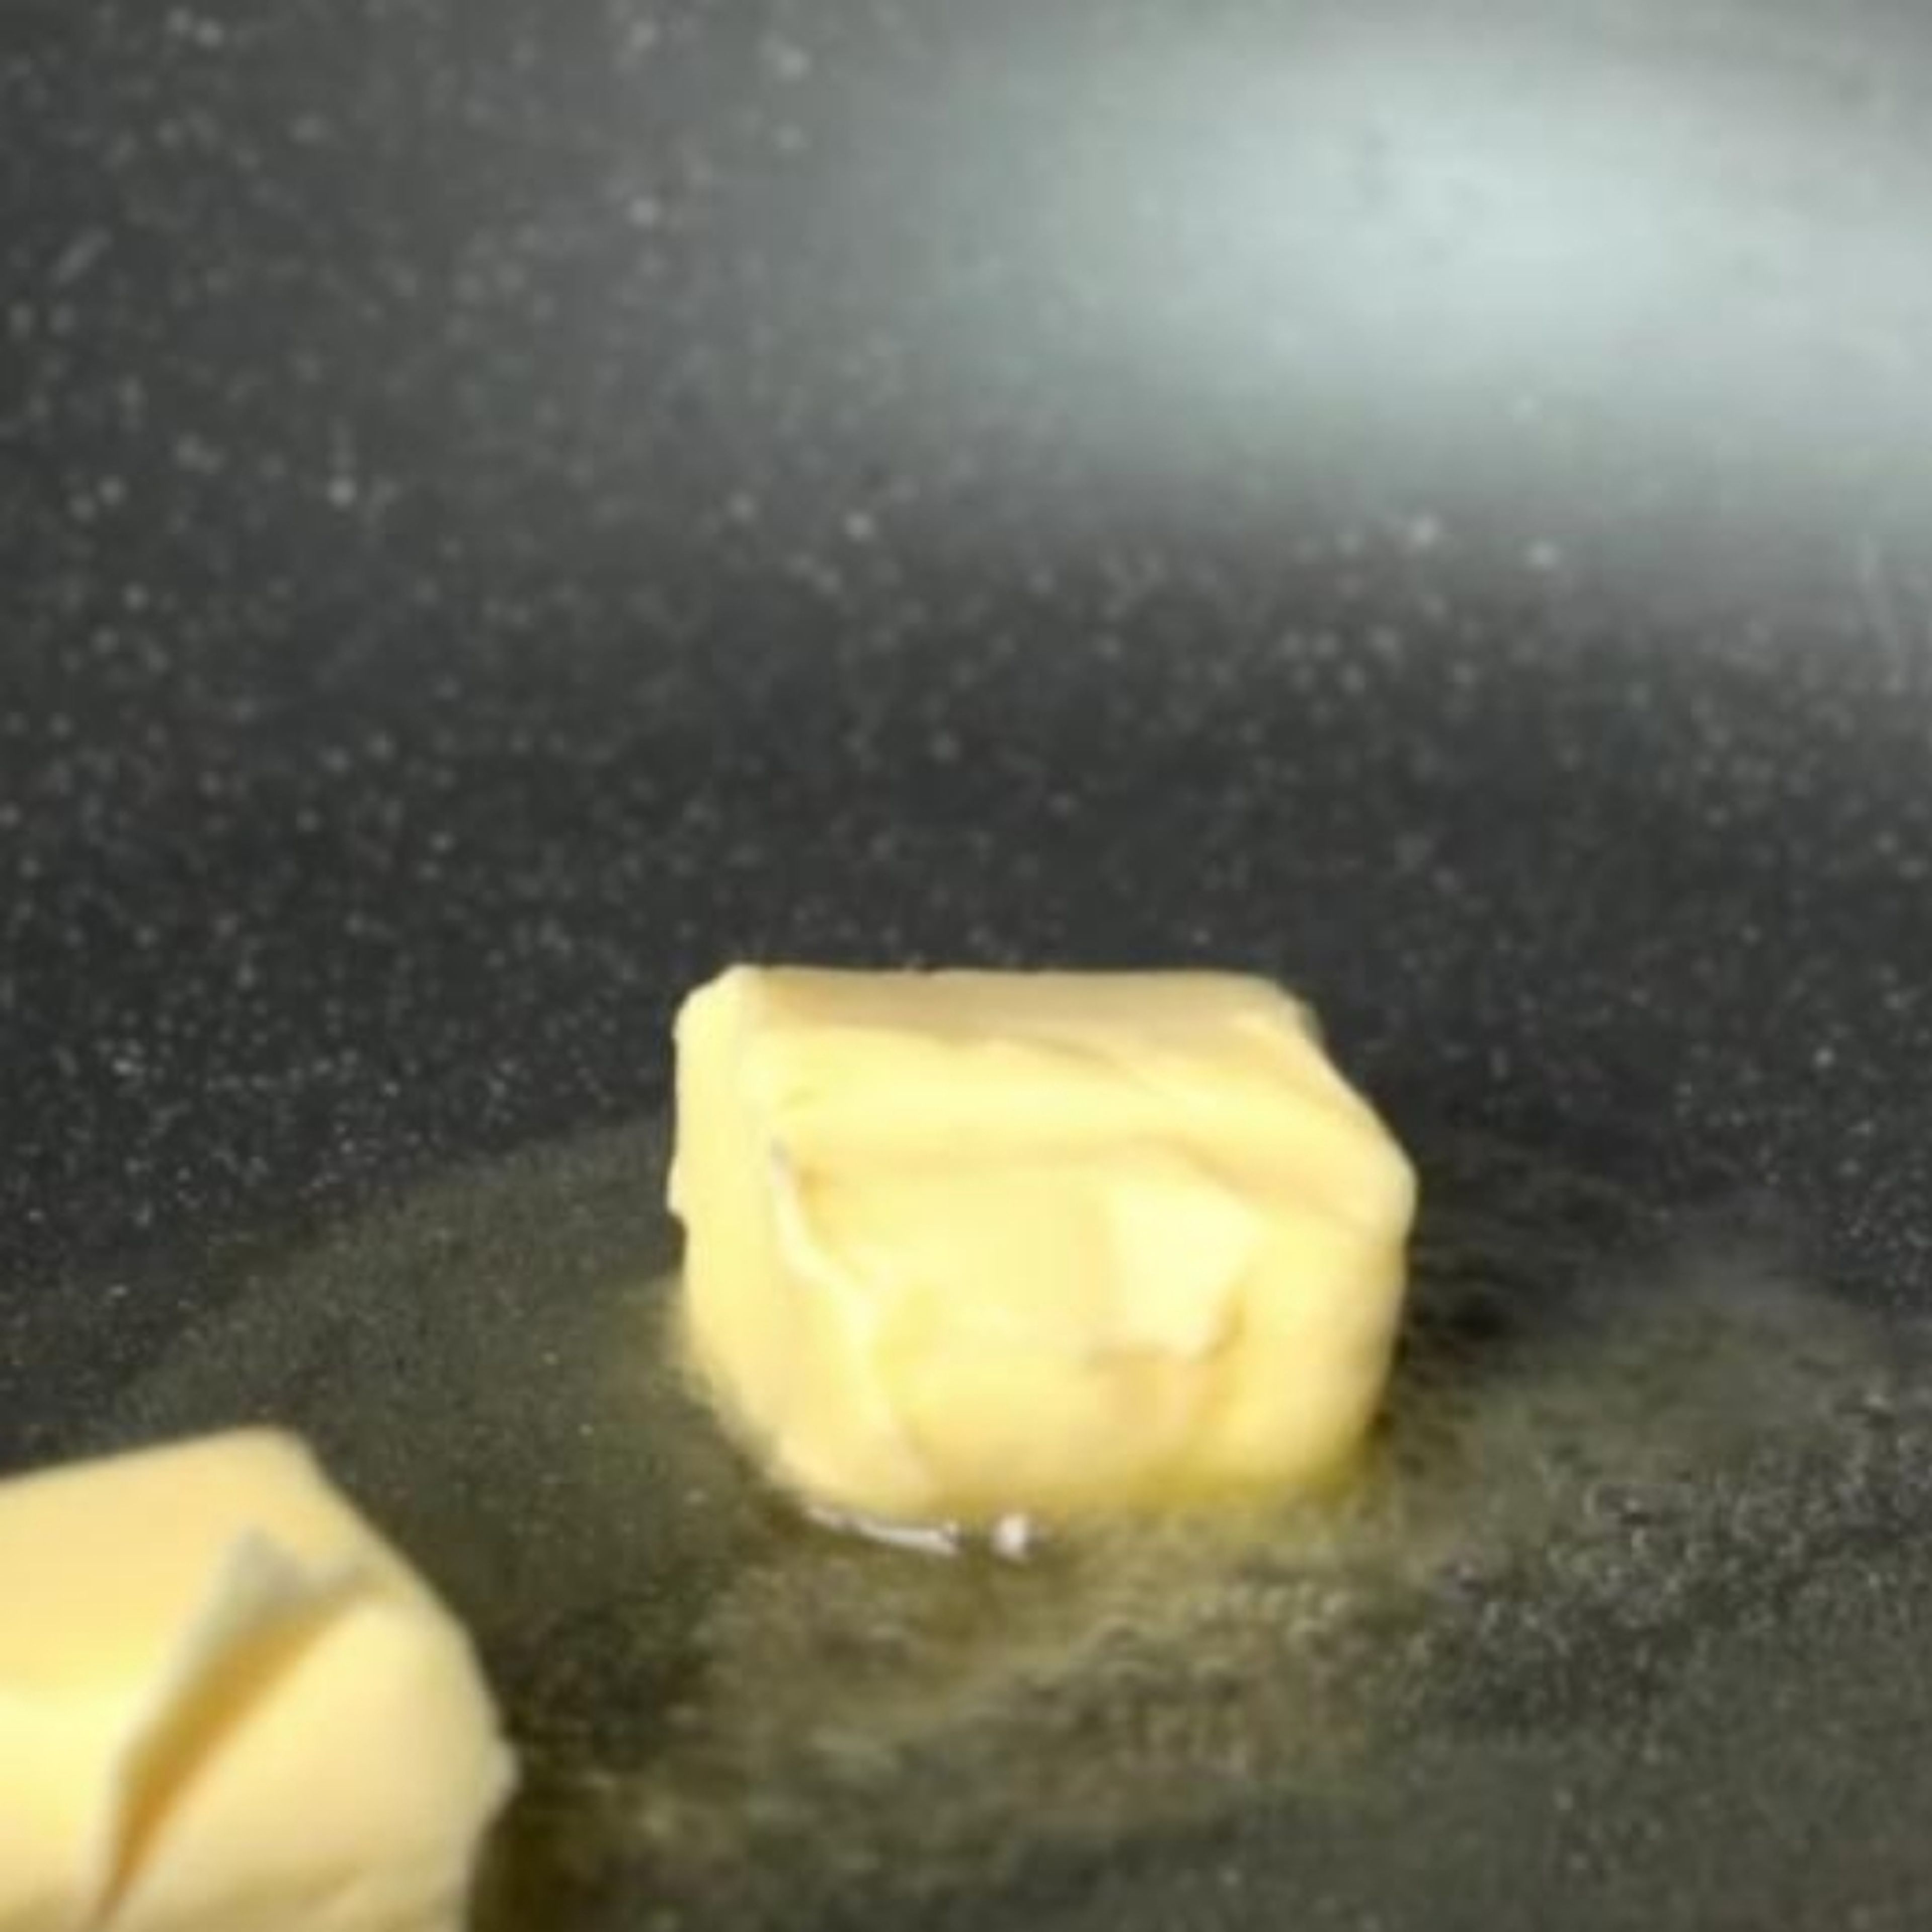 Öl und das Butter zusammen in die Pfanne geben und schmelzen lassen.